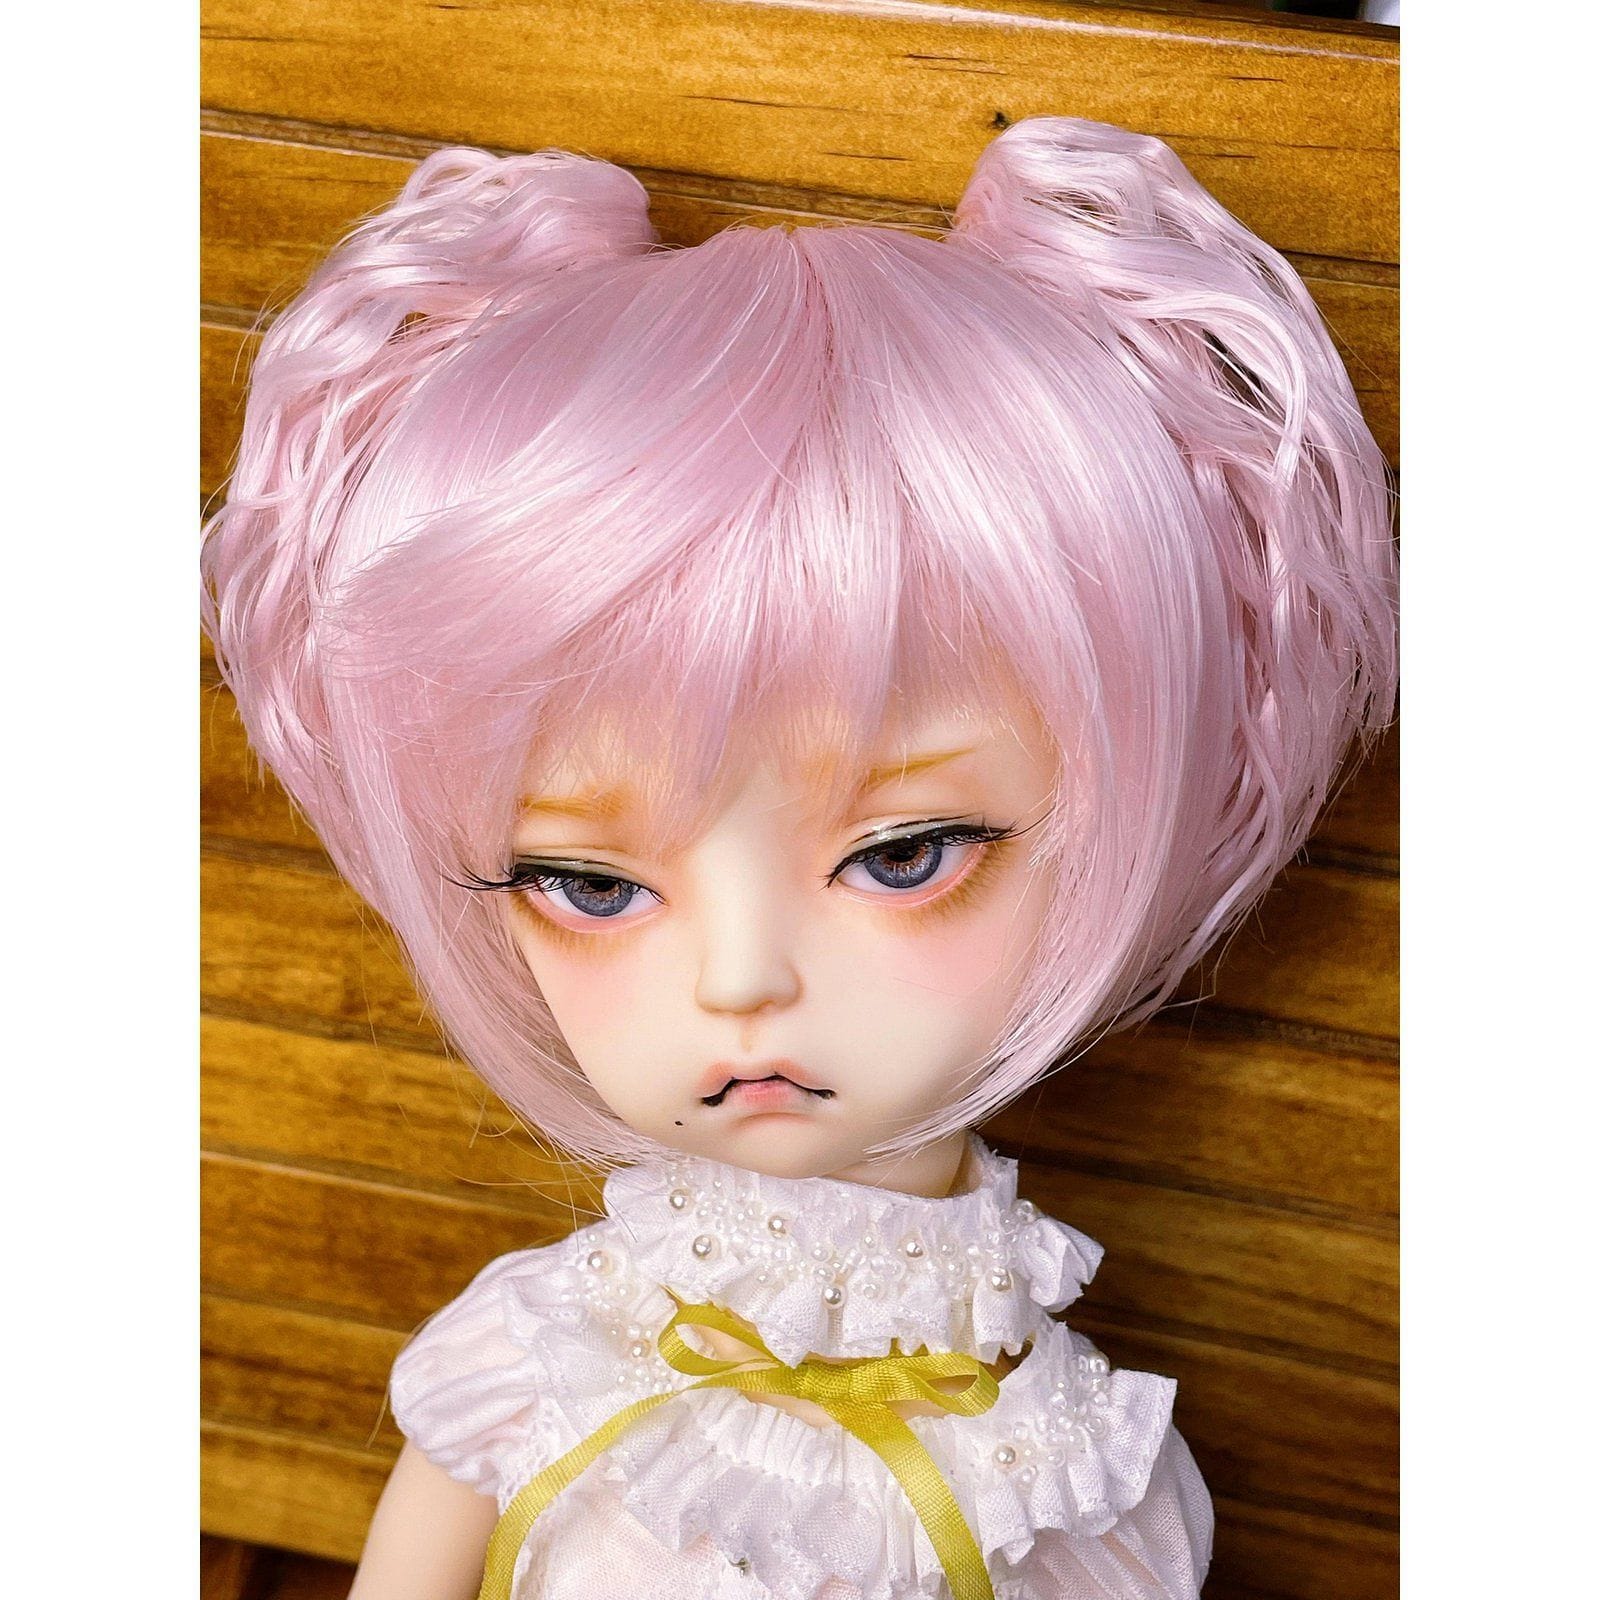 【Dollce】Harpy Style 娃用假髮 多色 BJD iMda